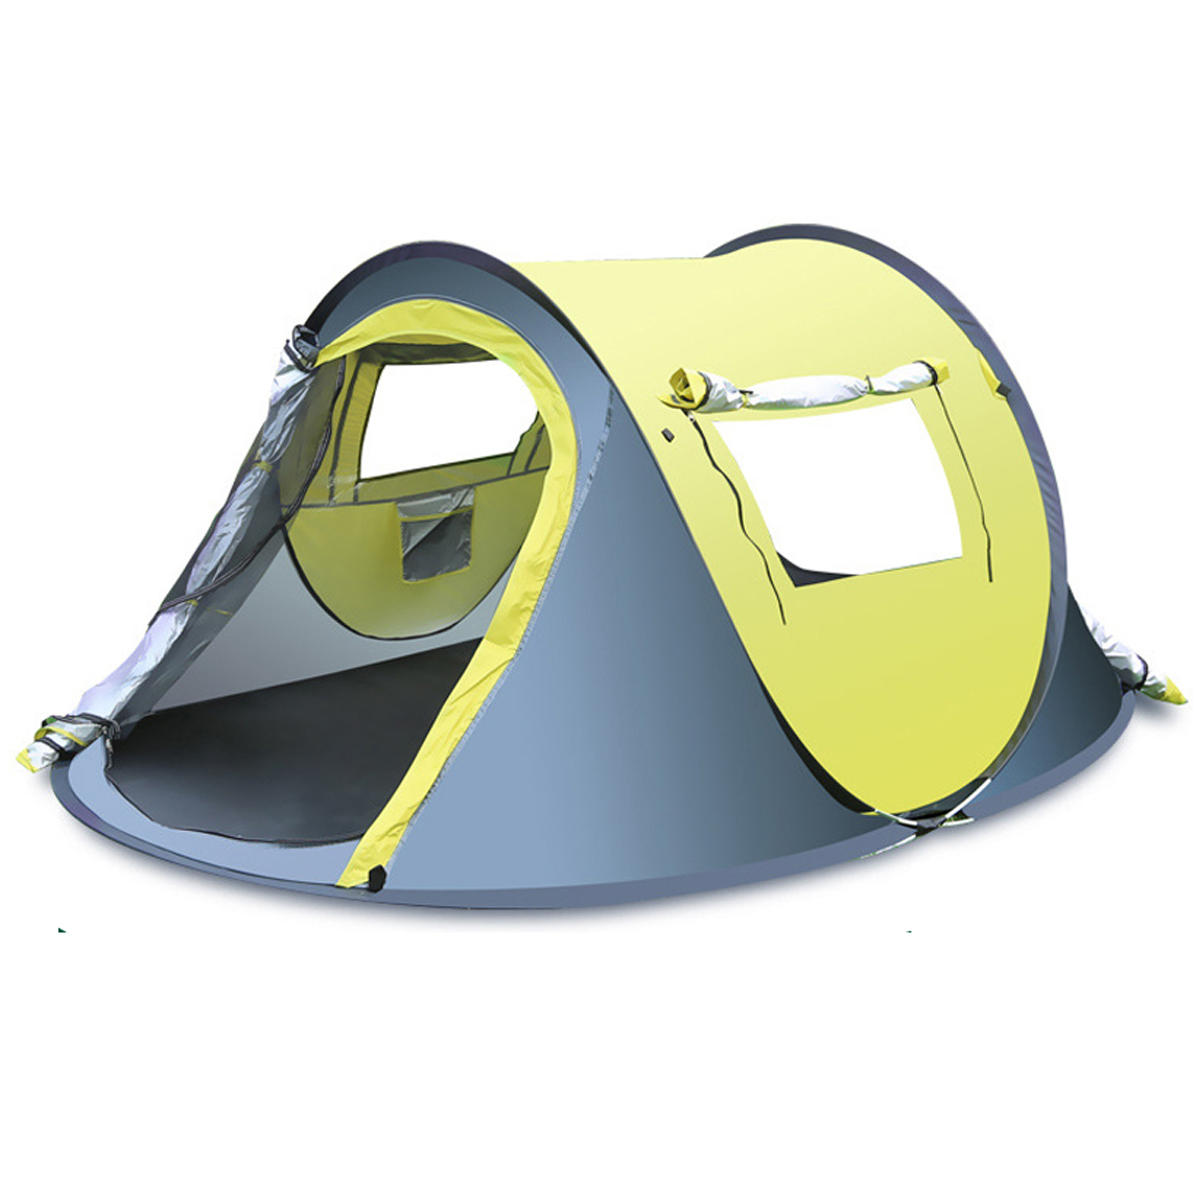 Gyors, automatikus kültéri sátor 3-4 főre, vízálló és esőálló, napvédővel, ideális kempingezéshez és túrázáshoz.